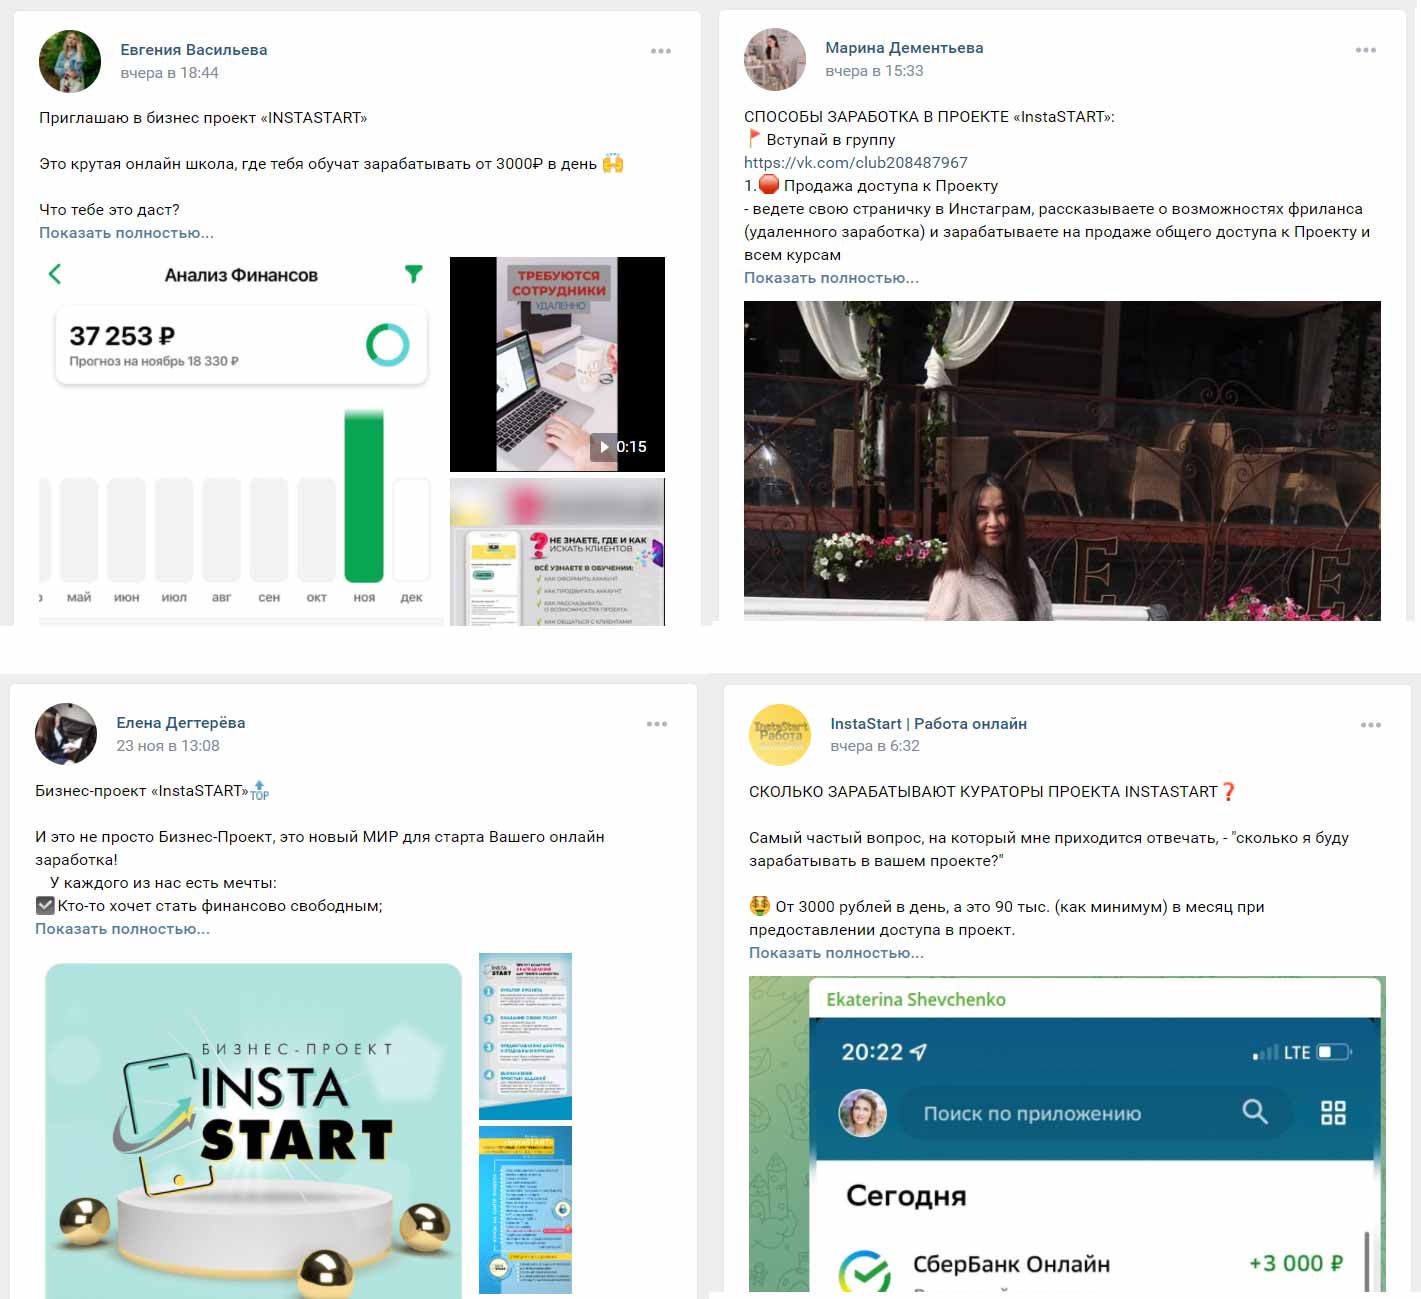 Вот что можно видеть в социальных сетях о бизнес-проекте InstaSTART